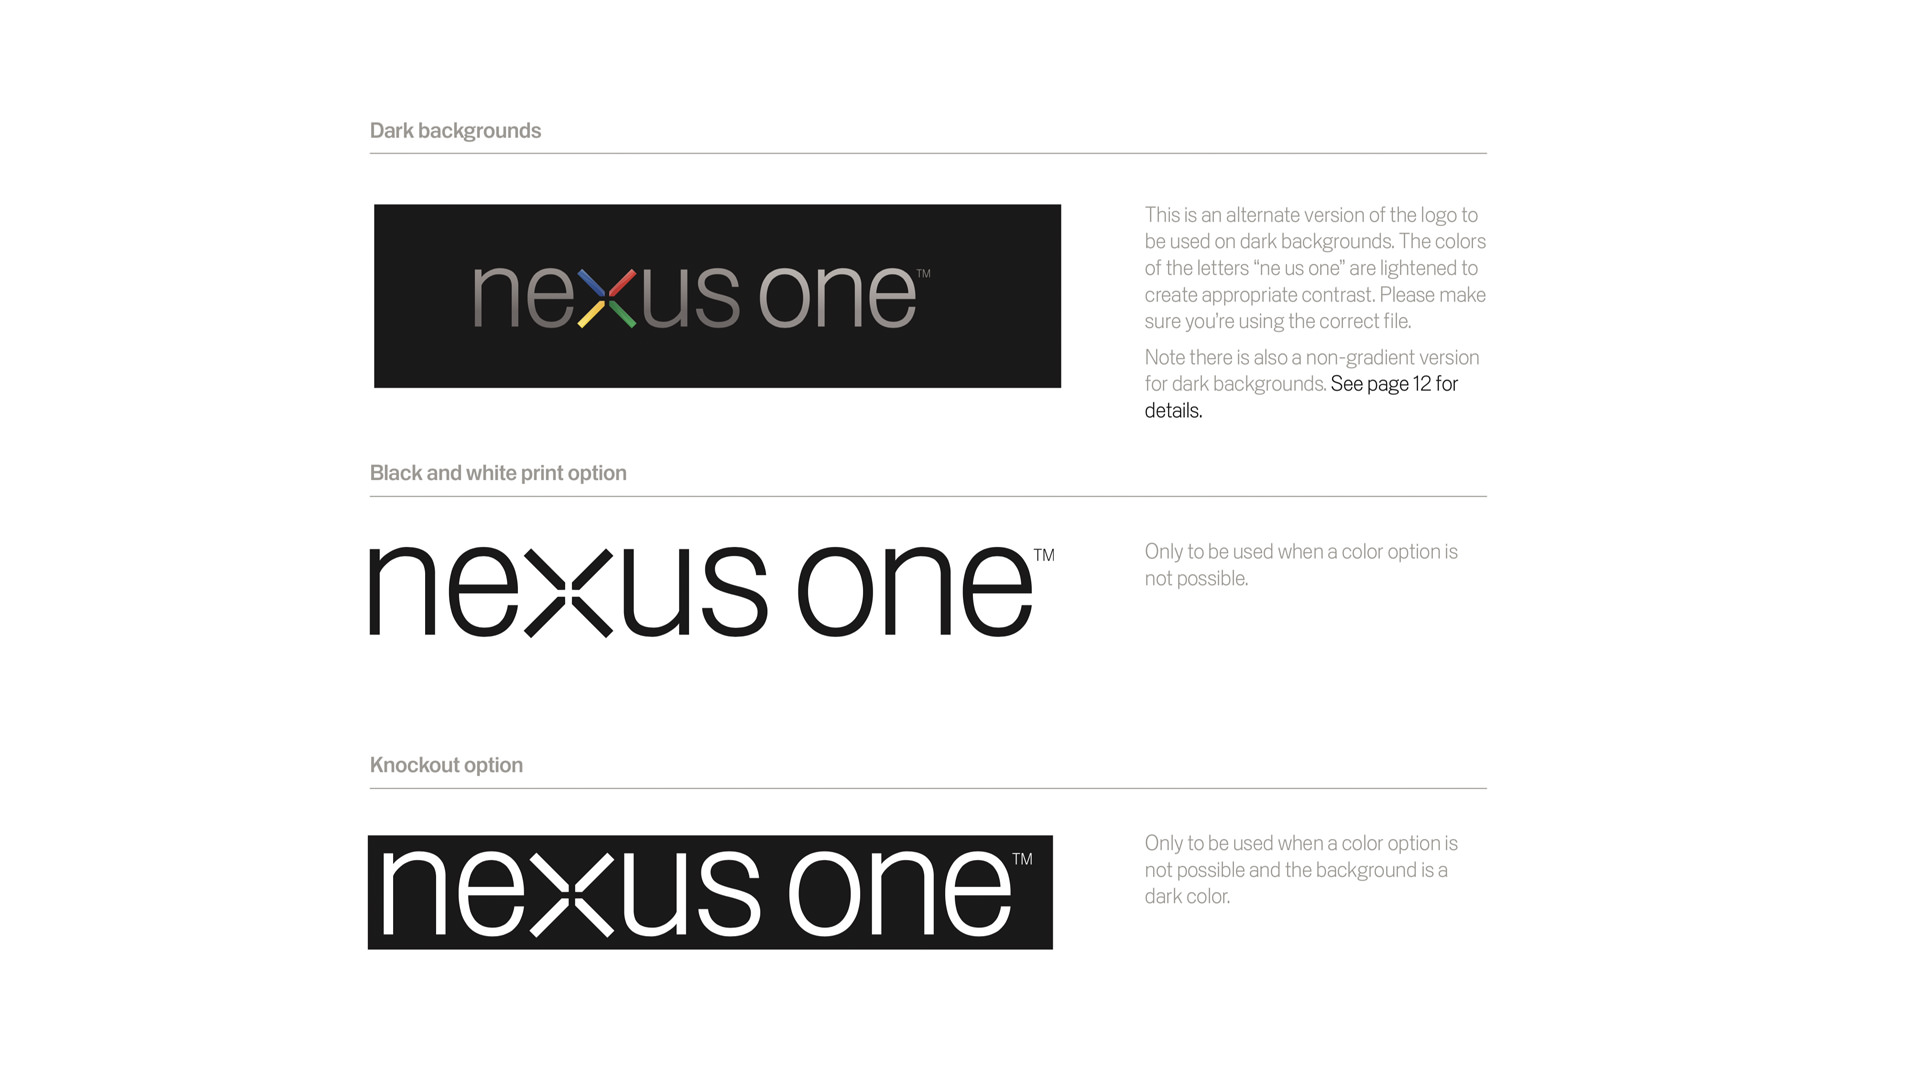 Android Nexus